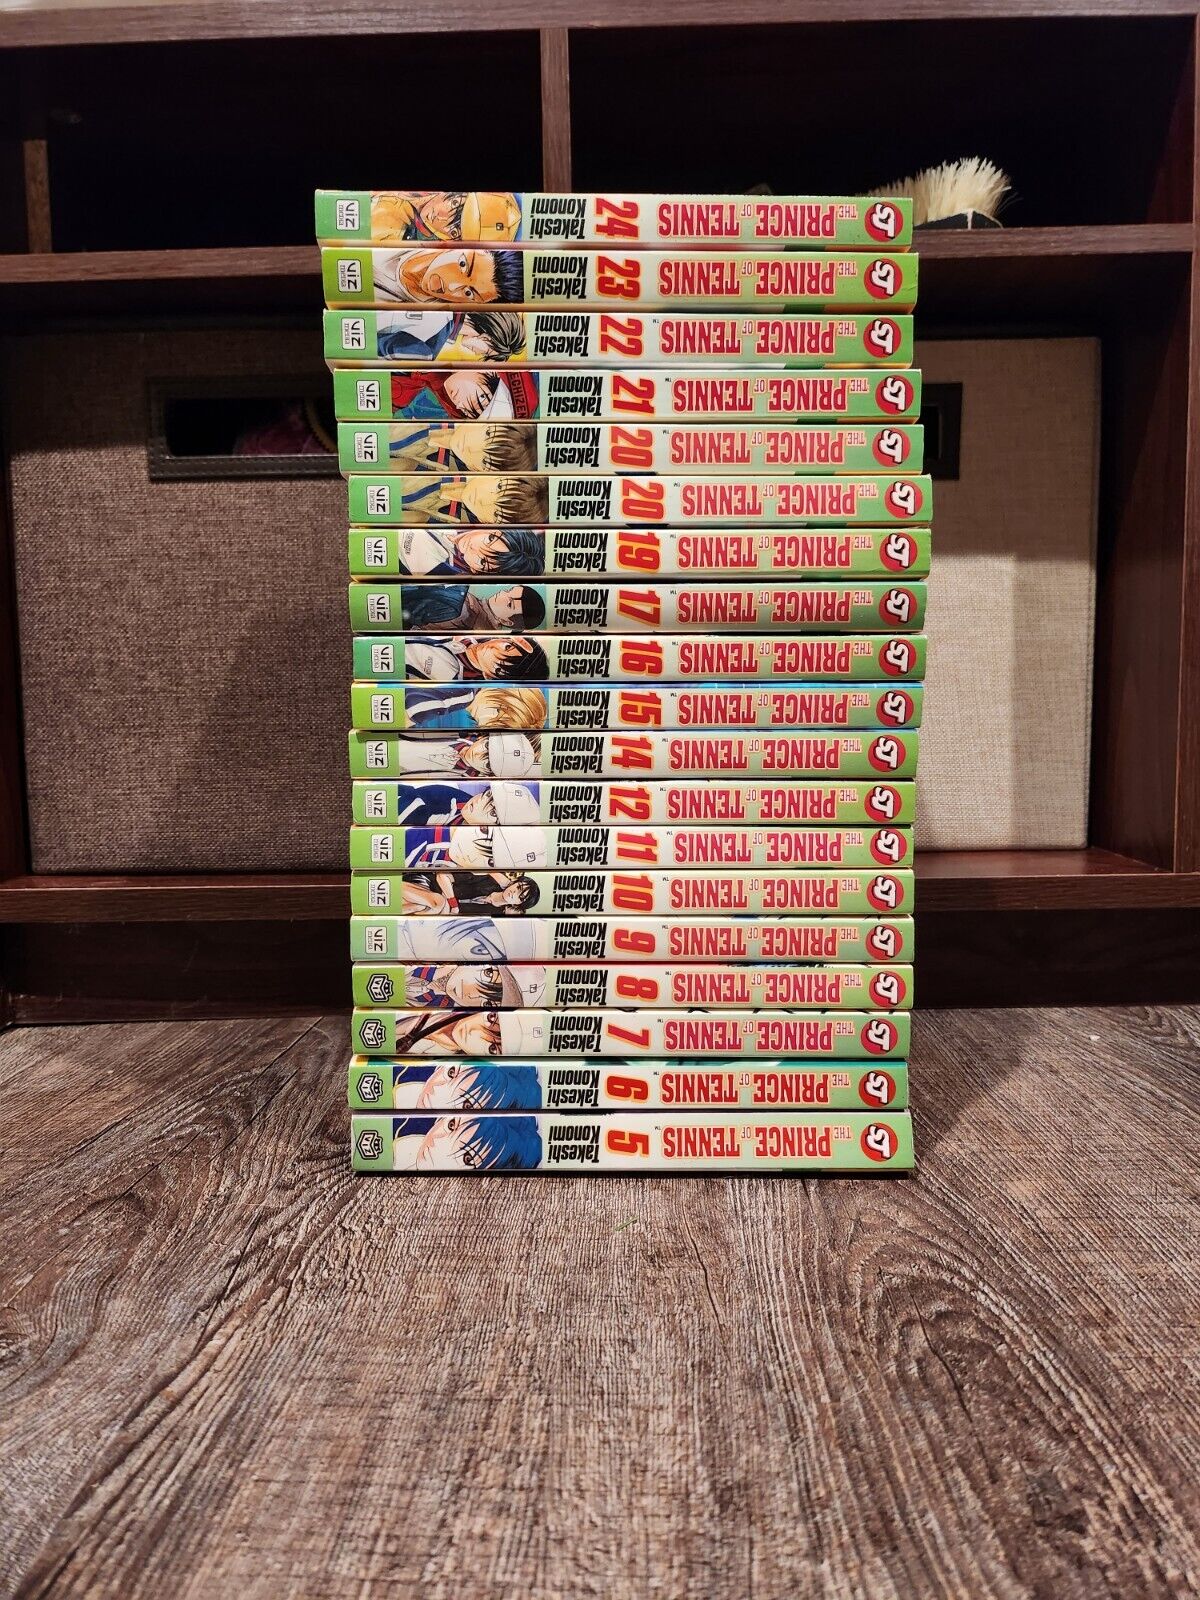 Prince of Tennis English Manga Volumes 5-12 14-17 and 19-24 